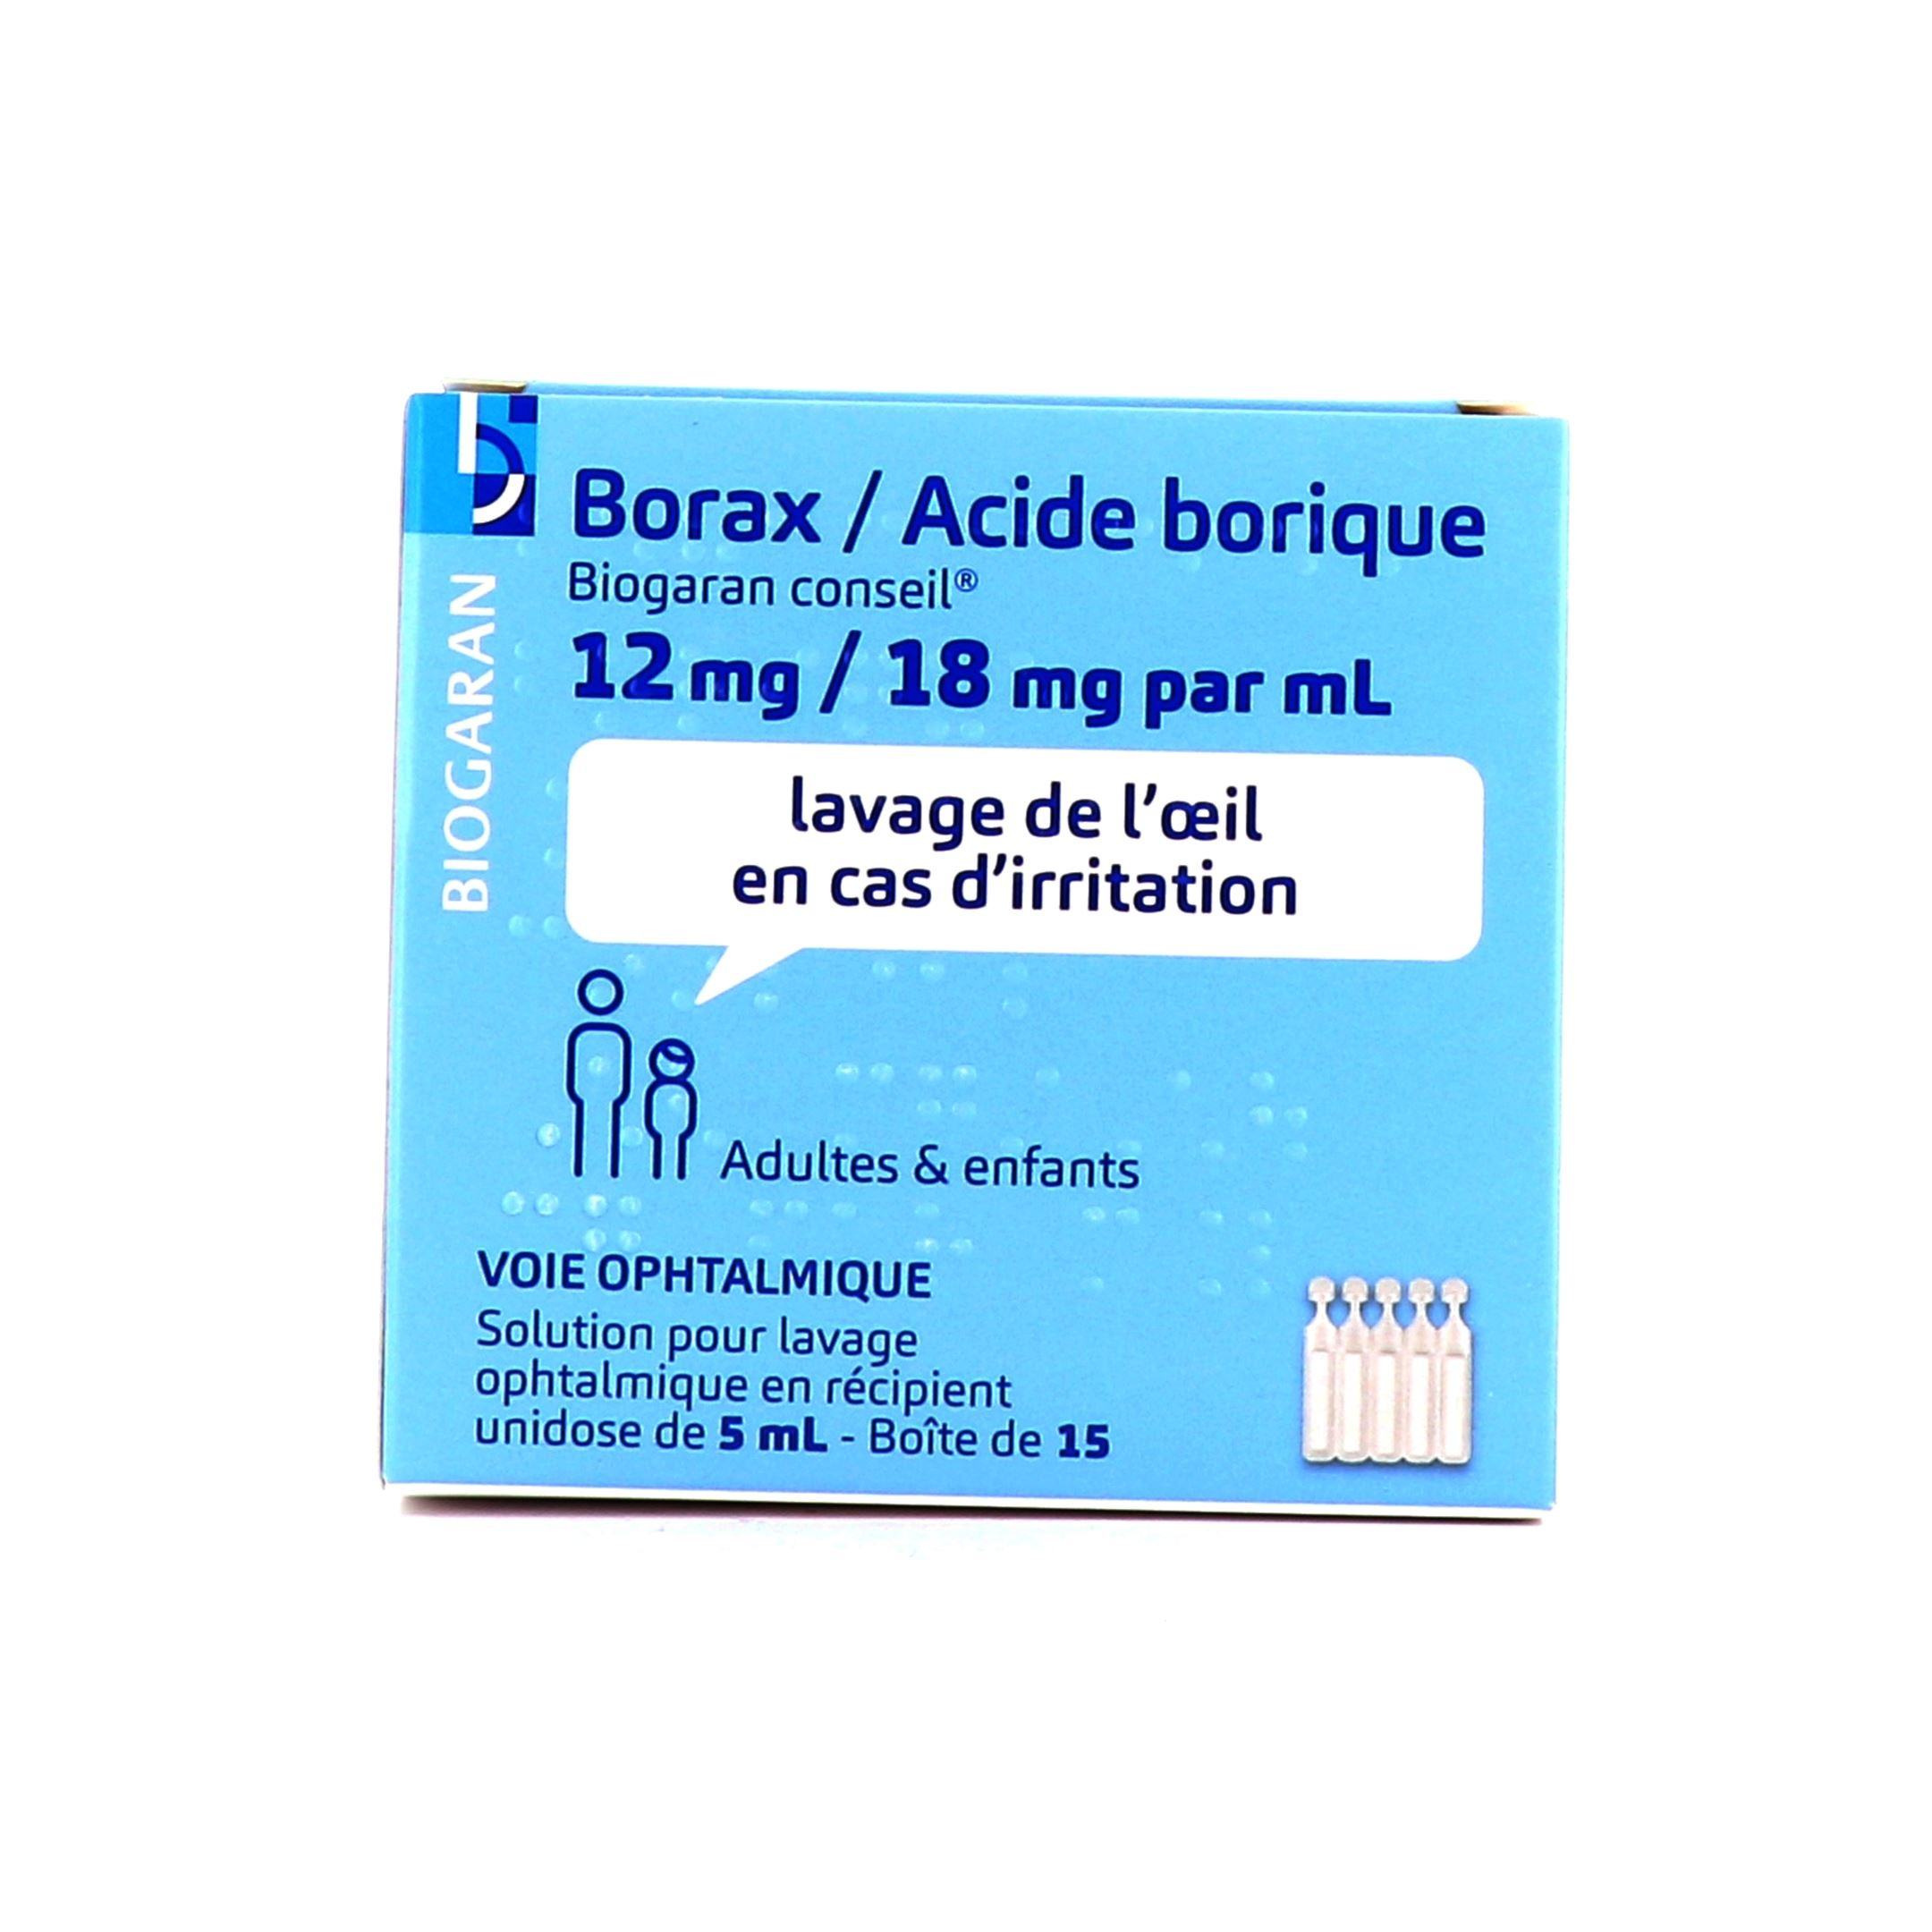 Borax/Acide Borique 12mg/18mg/ml Viatris - irritations conjonctivales